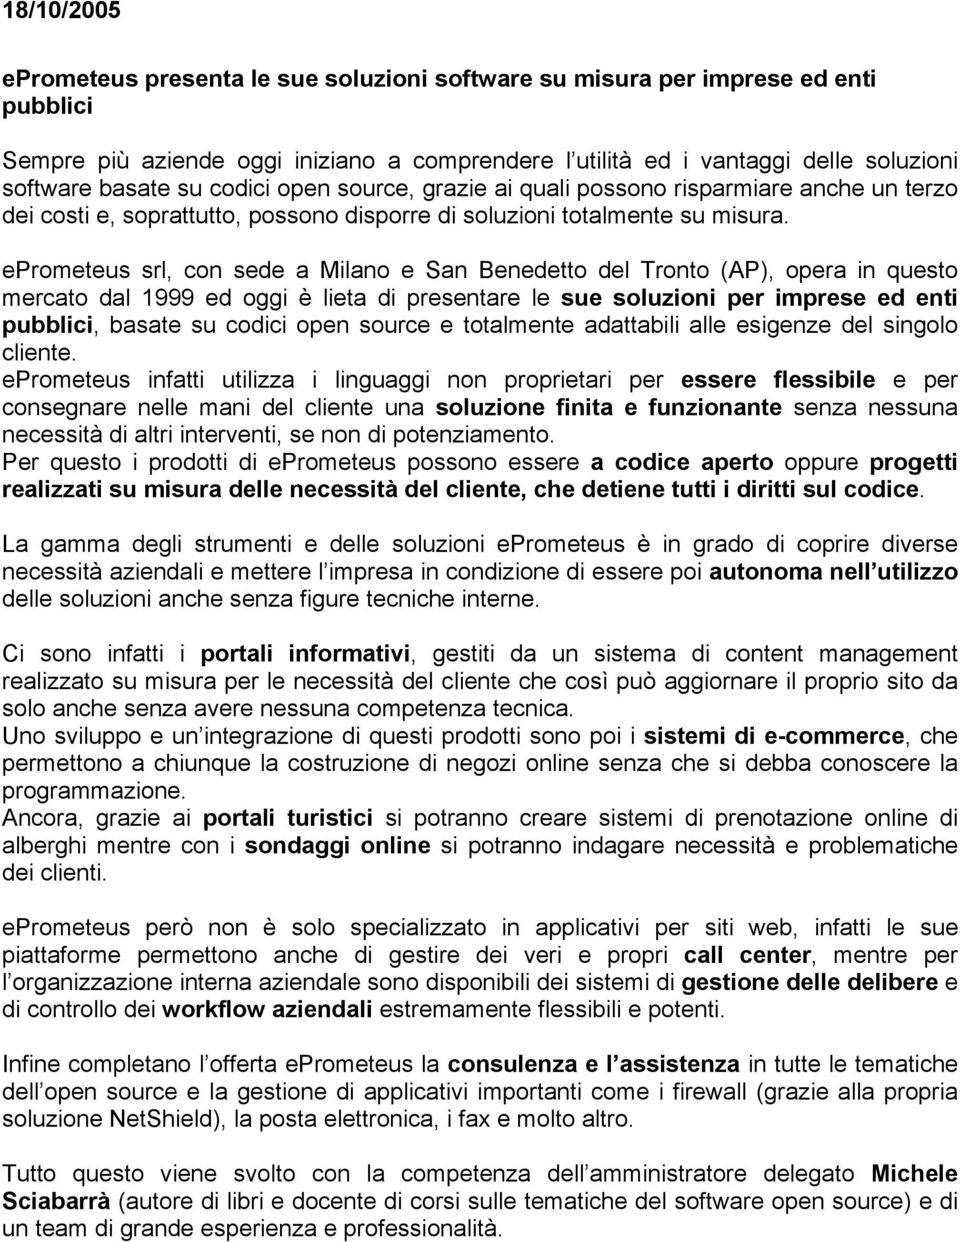 eprometeus srl, con sede a Milano e San Benedetto del Tronto (AP), opera in questo mercato dal 1999 ed oggi è lieta di presentare le sue soluzioni per imprese ed enti pubblici, basate su codici open